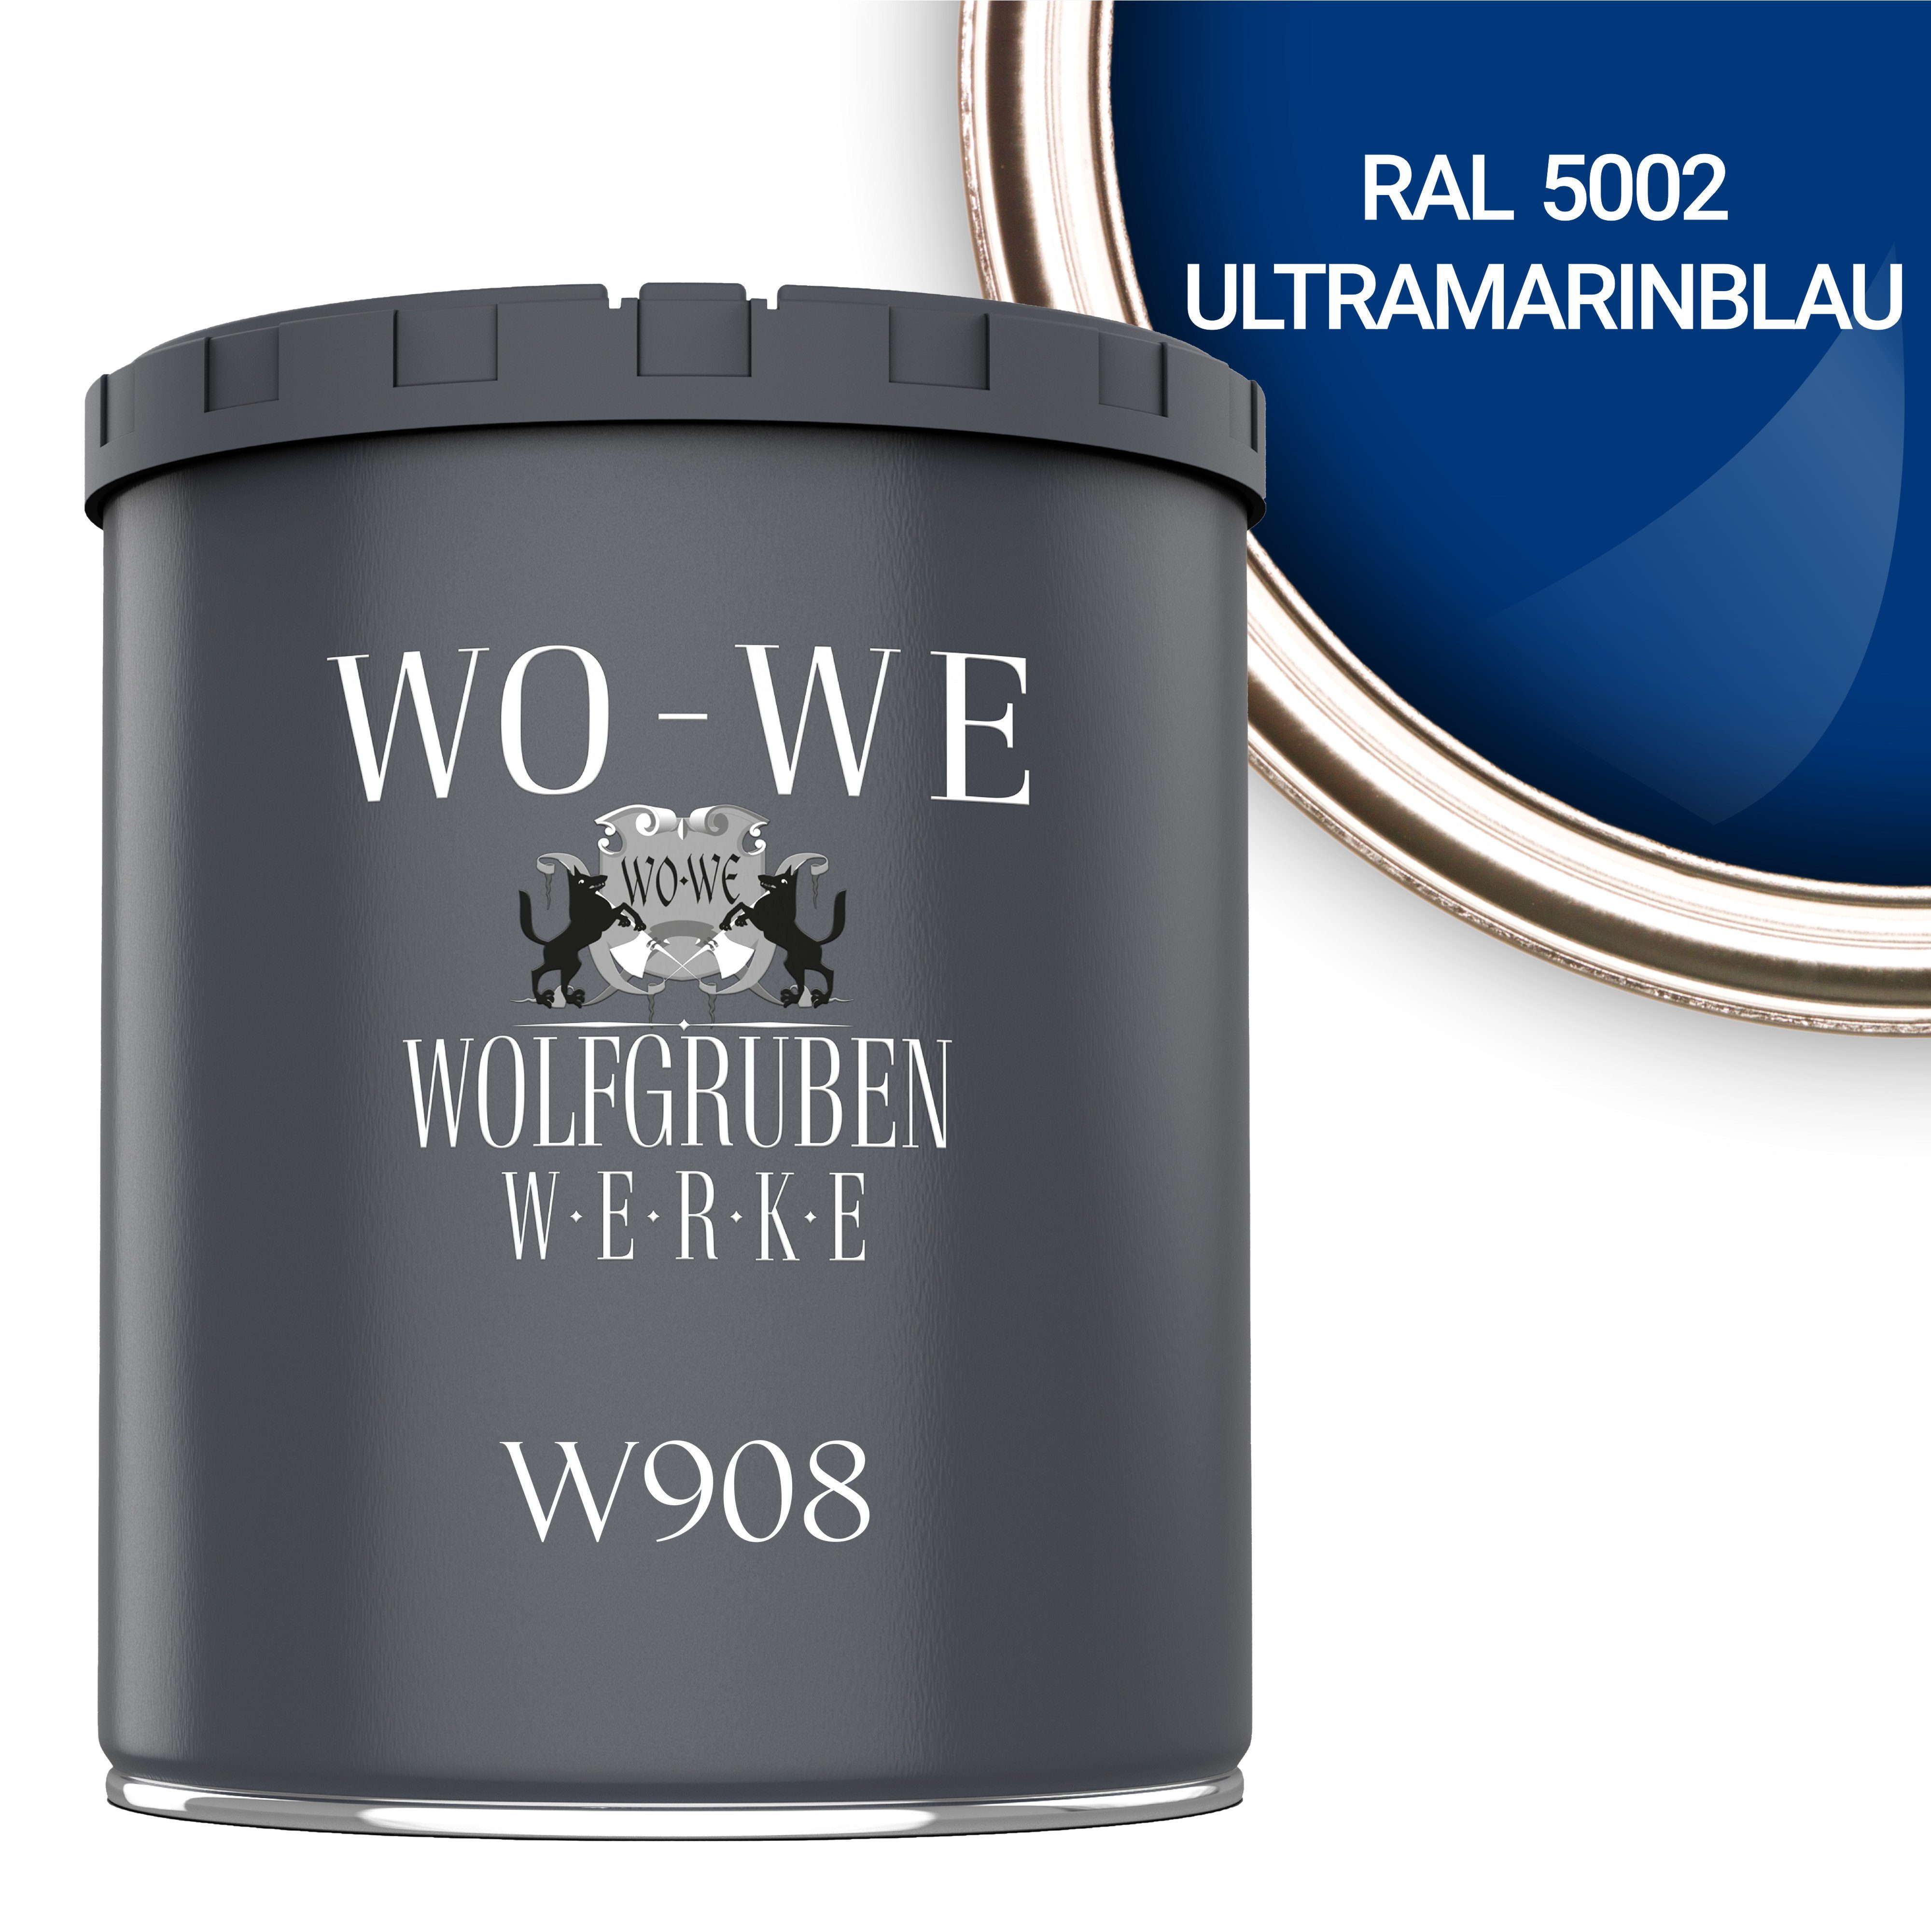 WO-WE Metallschutzlack 4in1 Metalllack Metallfarbe Metallschutzfarbe W908, 1L - 2,5L, Außenbereich RAL 5002 Ultramarinblau